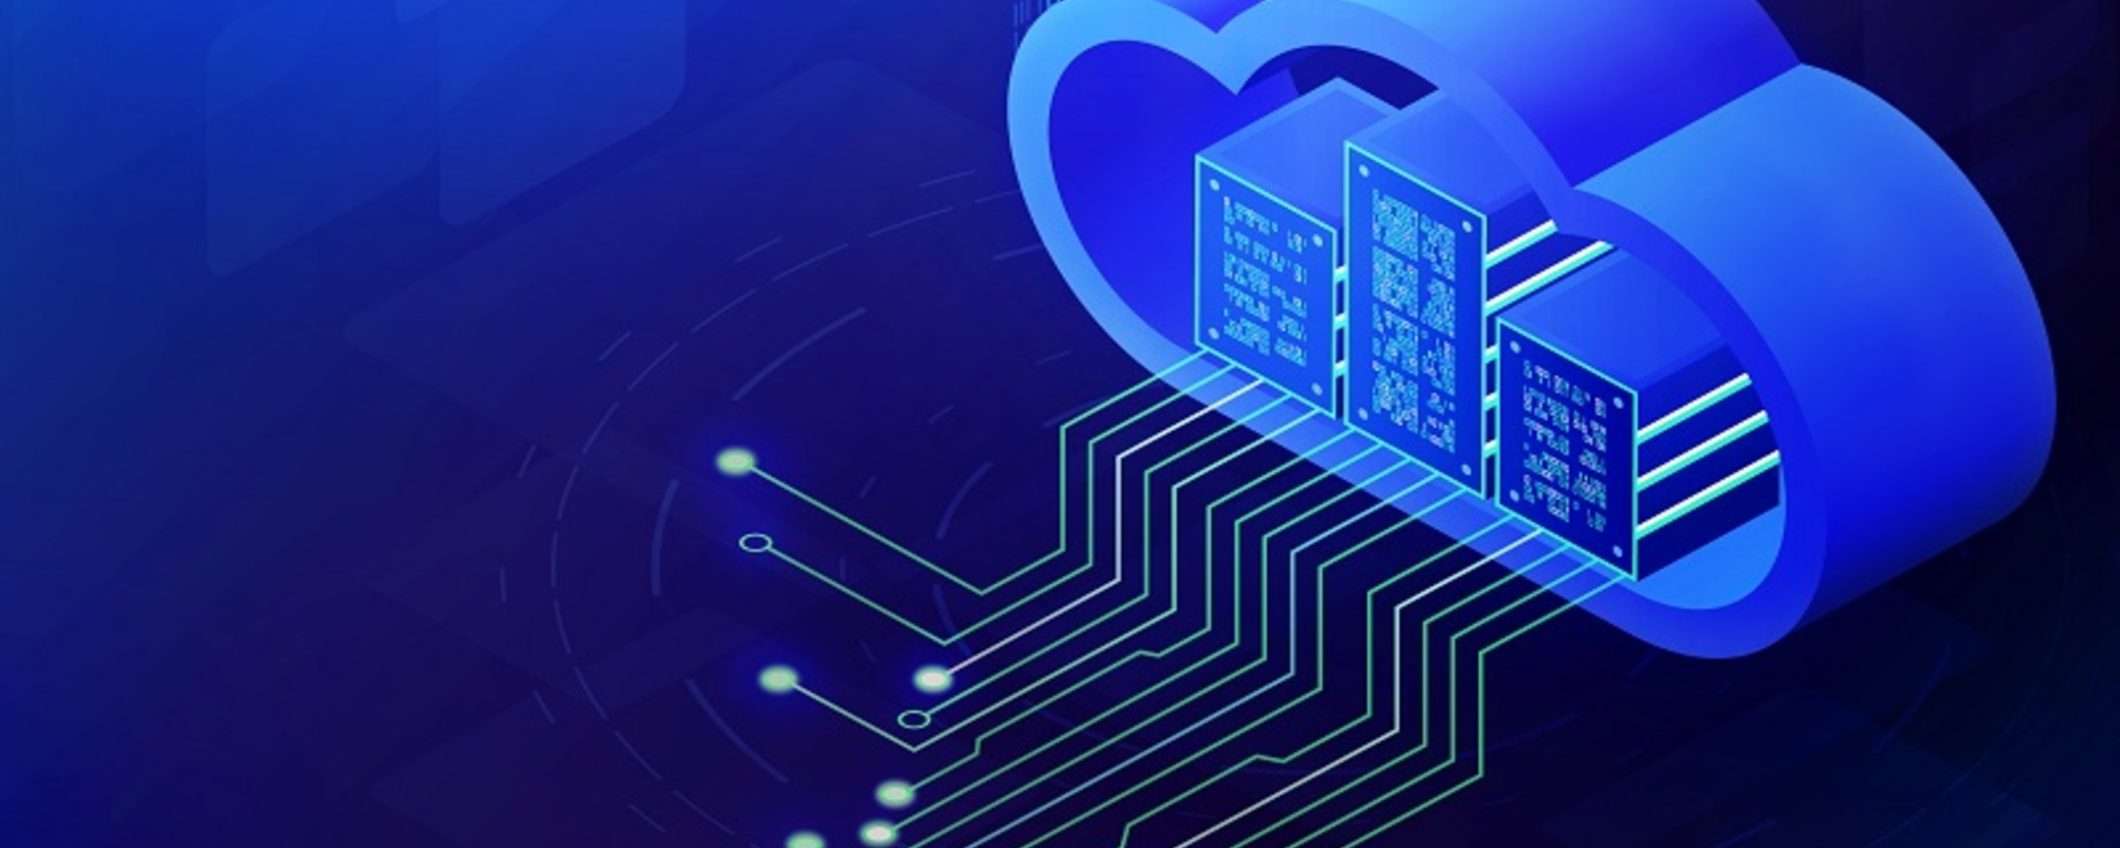 Proteggi i tuoi dati con Internxt, il cloud storage sicuro e conveniente